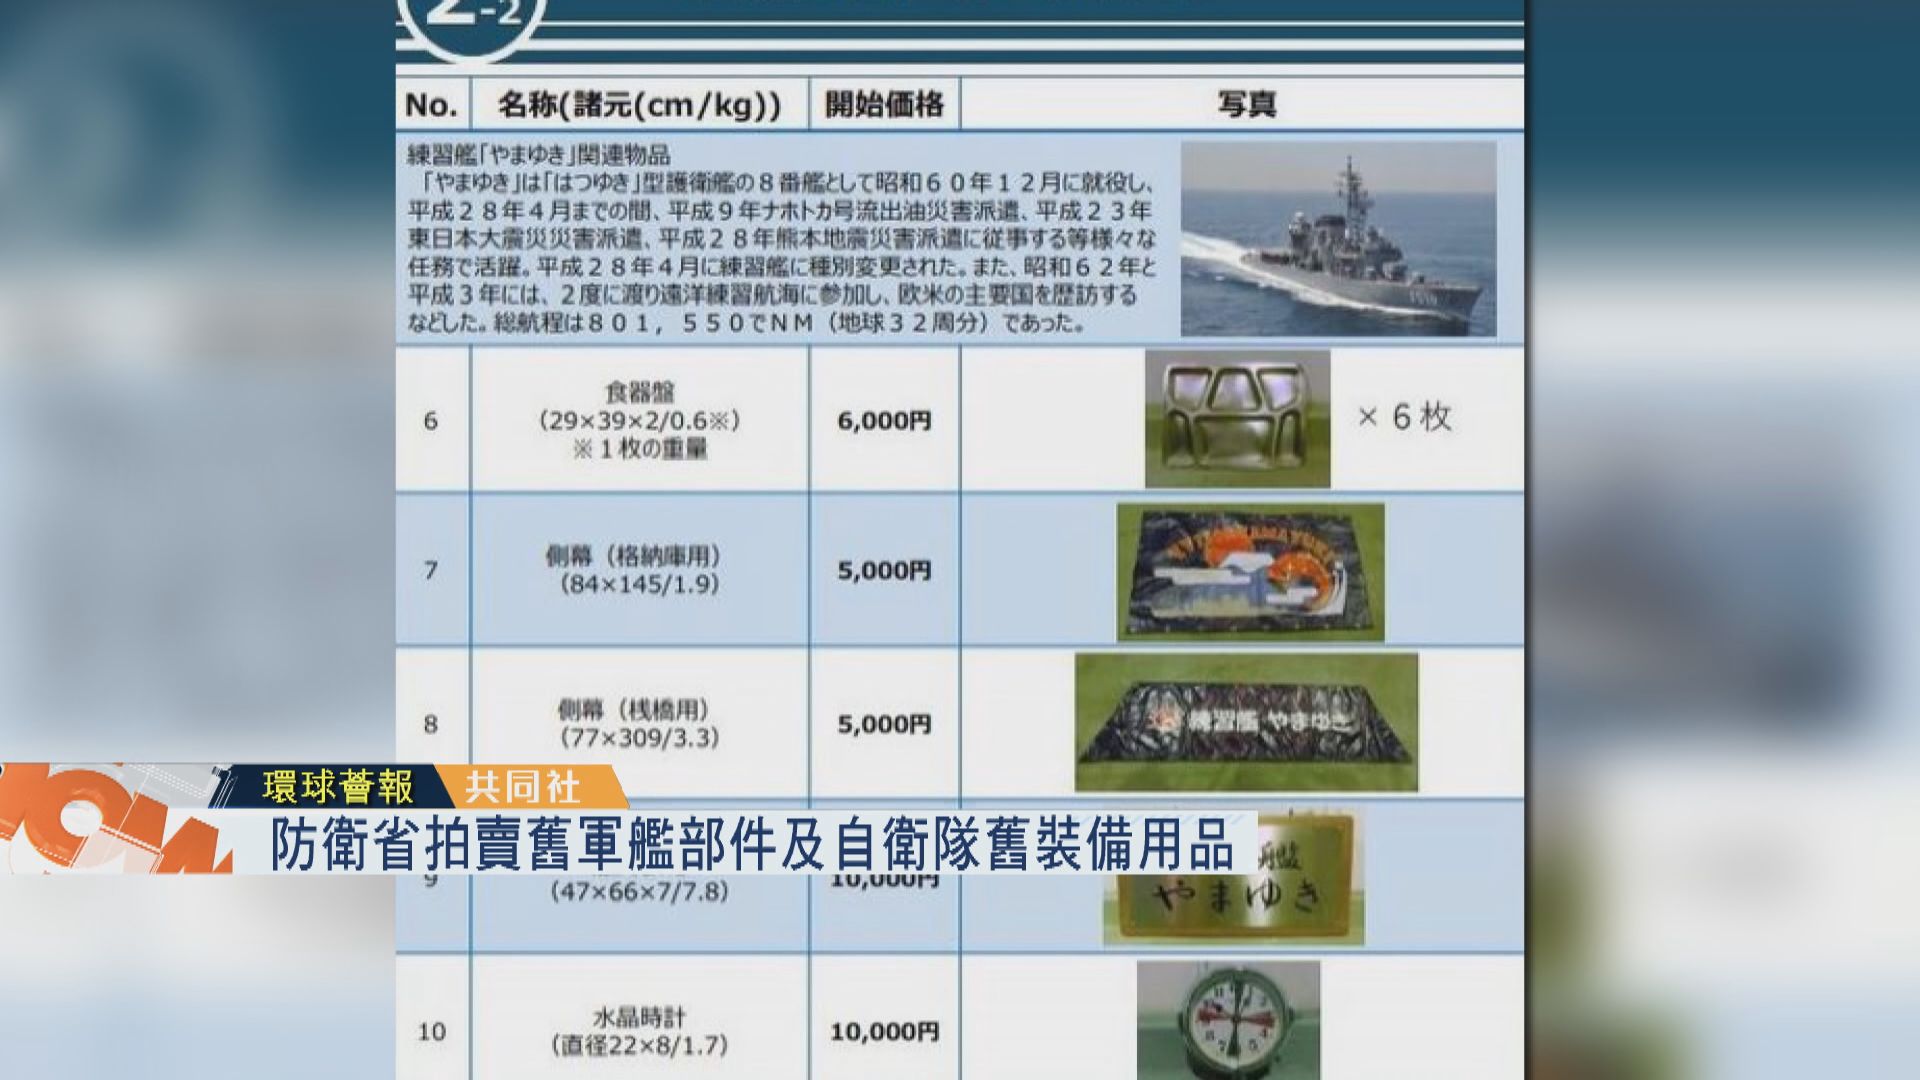 【環球薈報】防衛省拍賣舊軍艦部件及自衛隊舊裝備用品